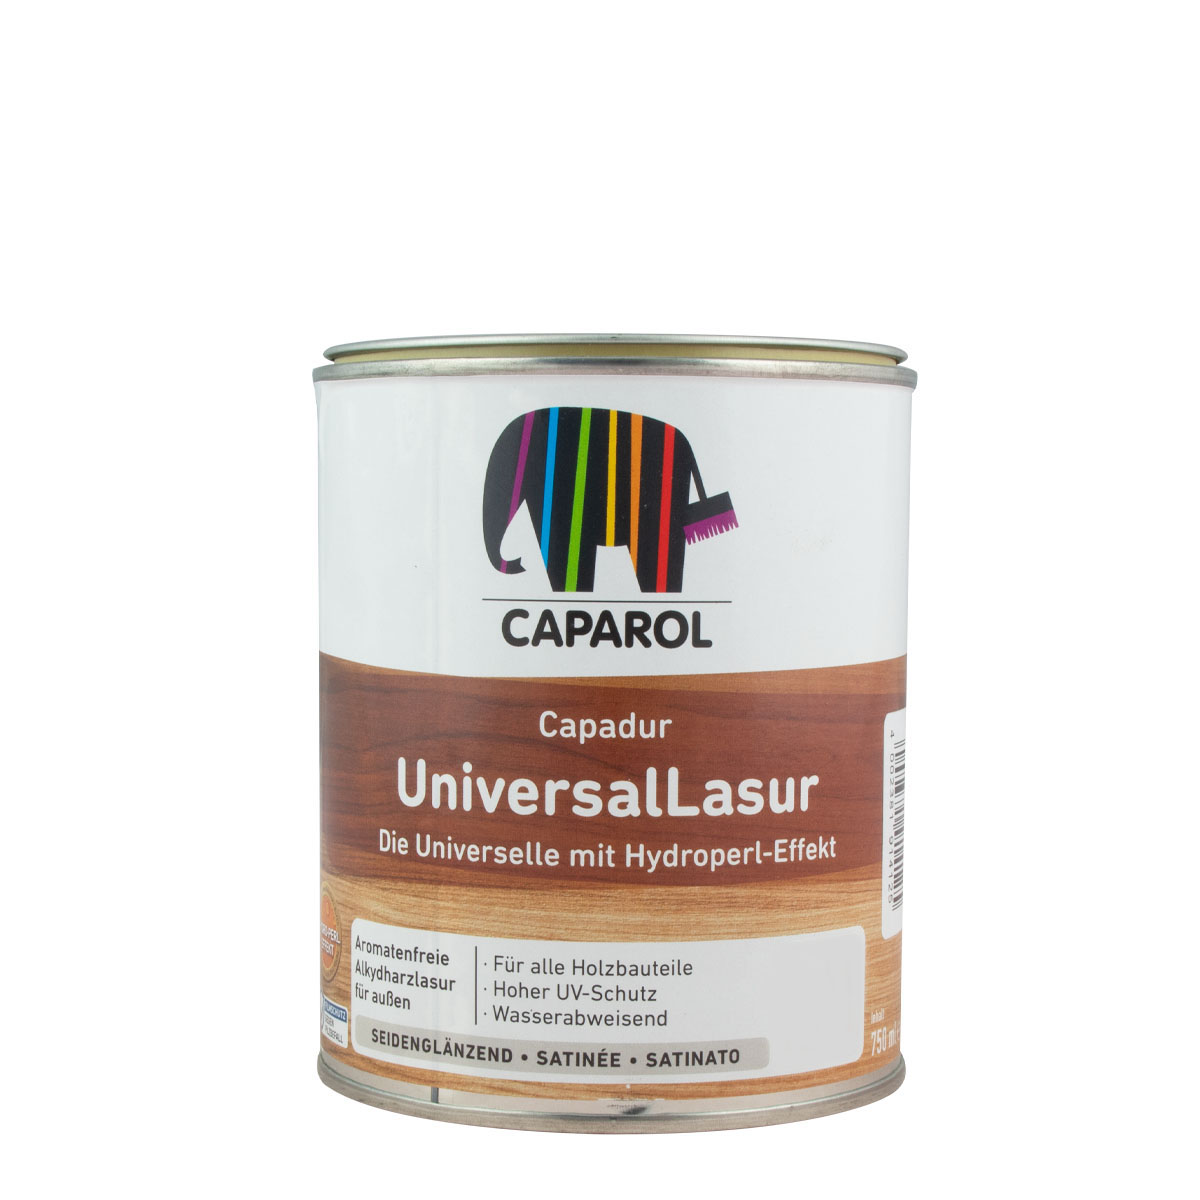 Caparol Capadur Universal Lasur 750ml, Eiche